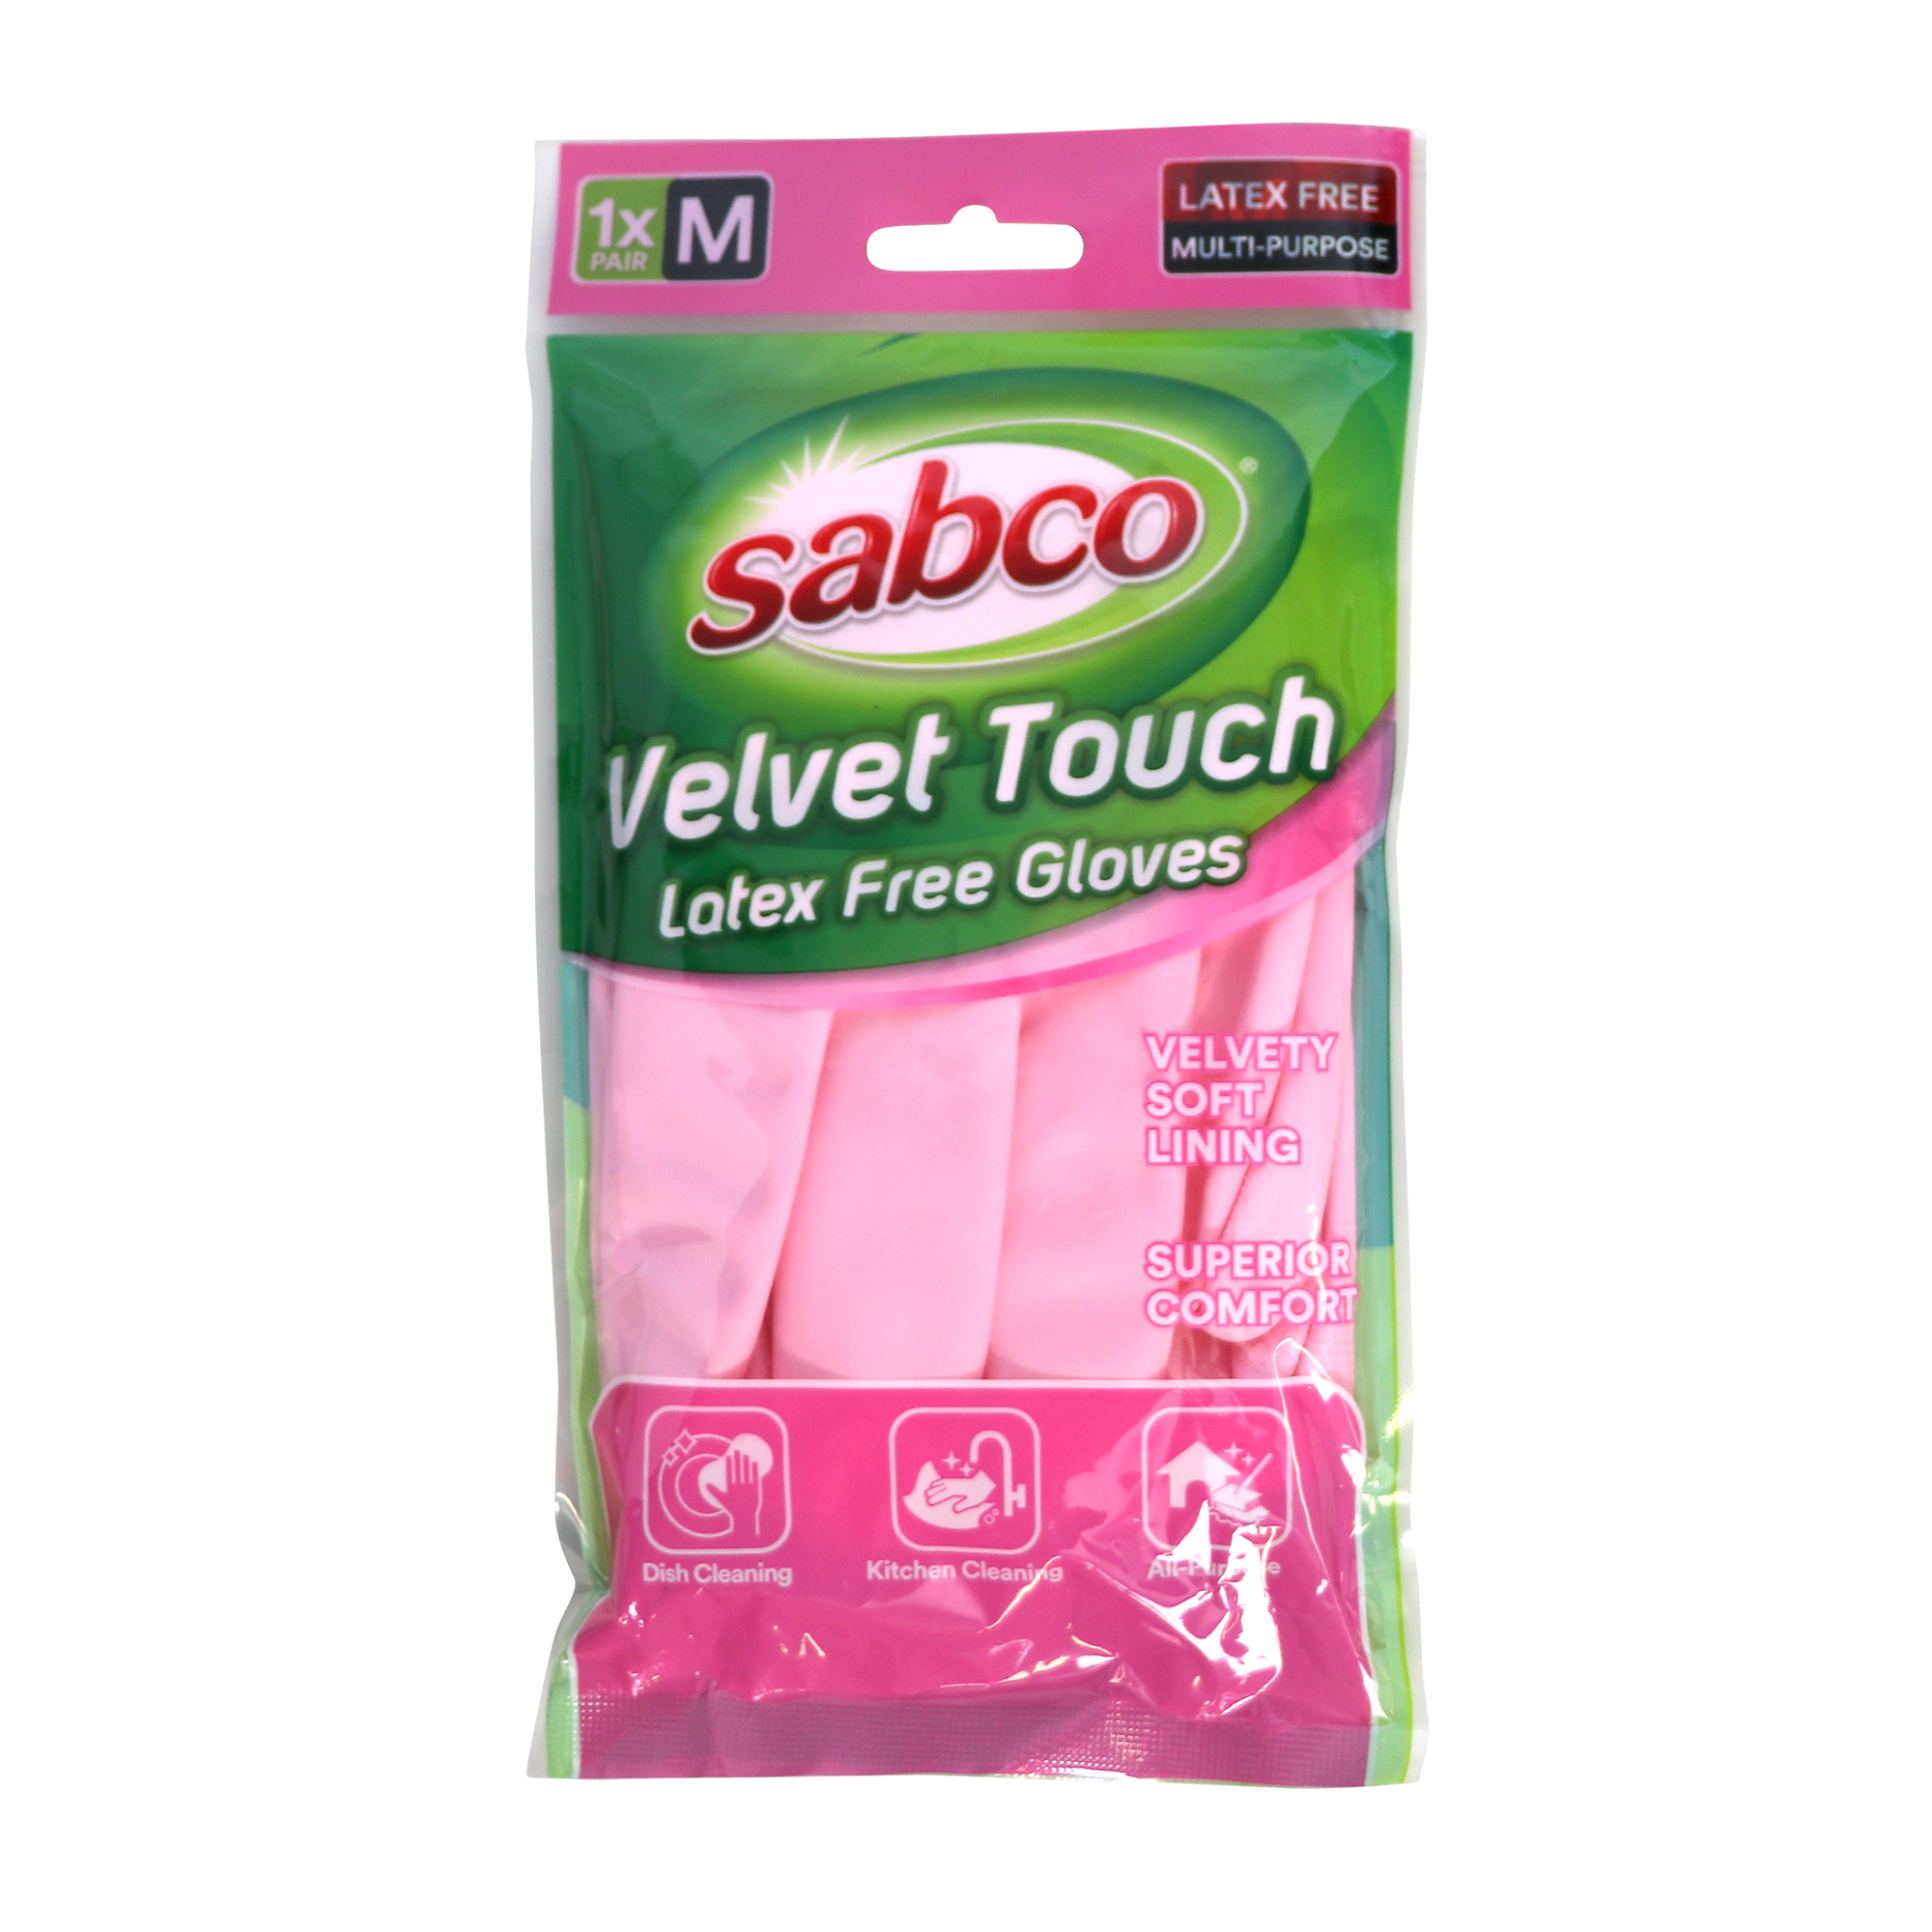 Buy Velvet Touch Latex Free Gloves - Medium & Large - Sabco